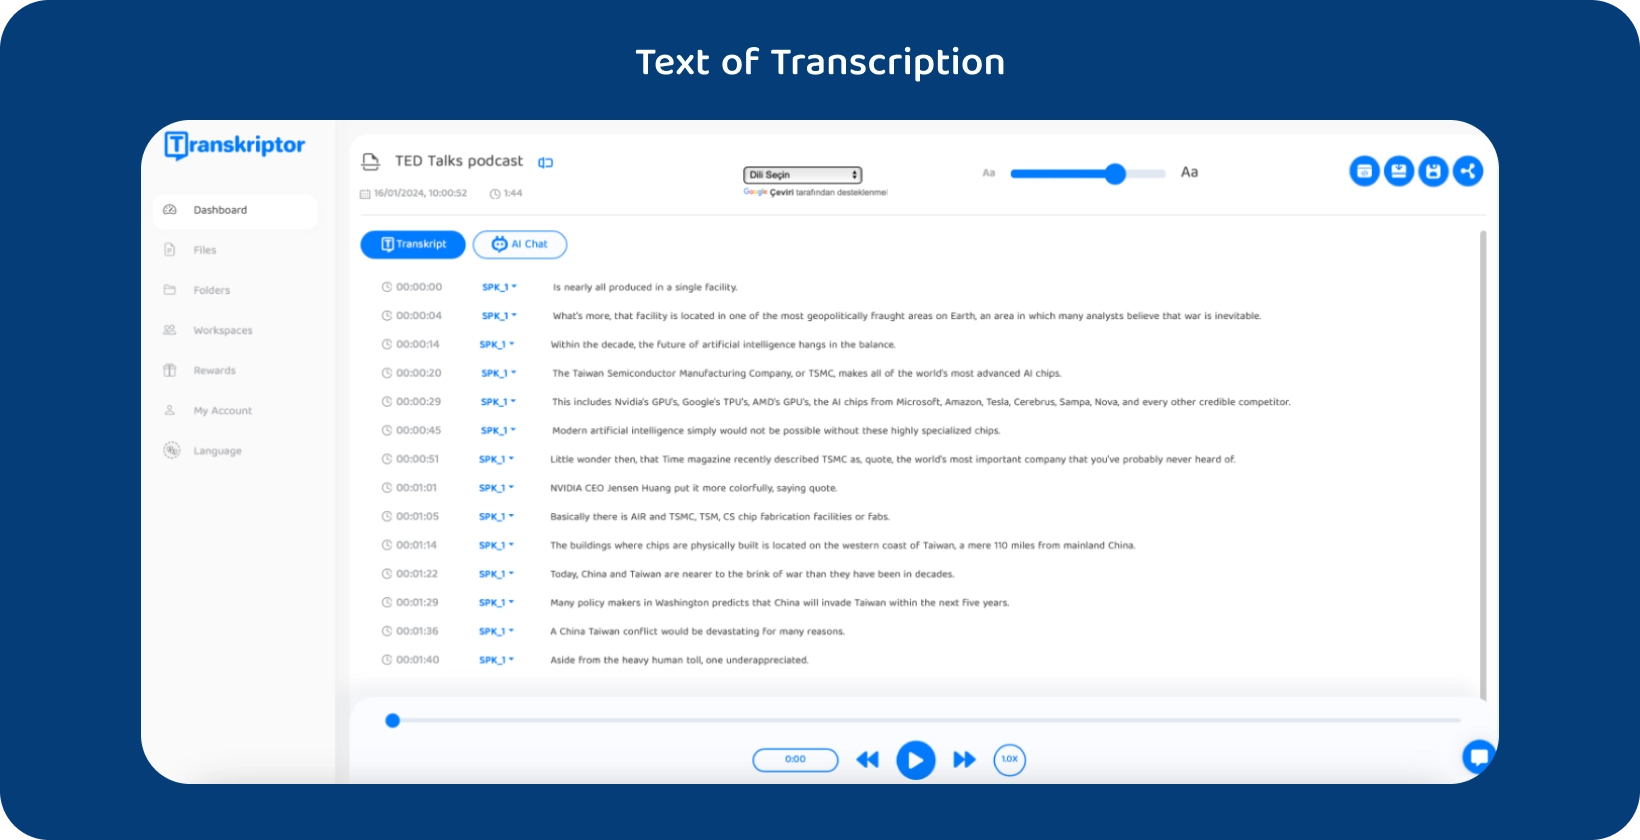 Transkriptor softwarové rozhraní zobrazující přepsaný podcast TED Talks.